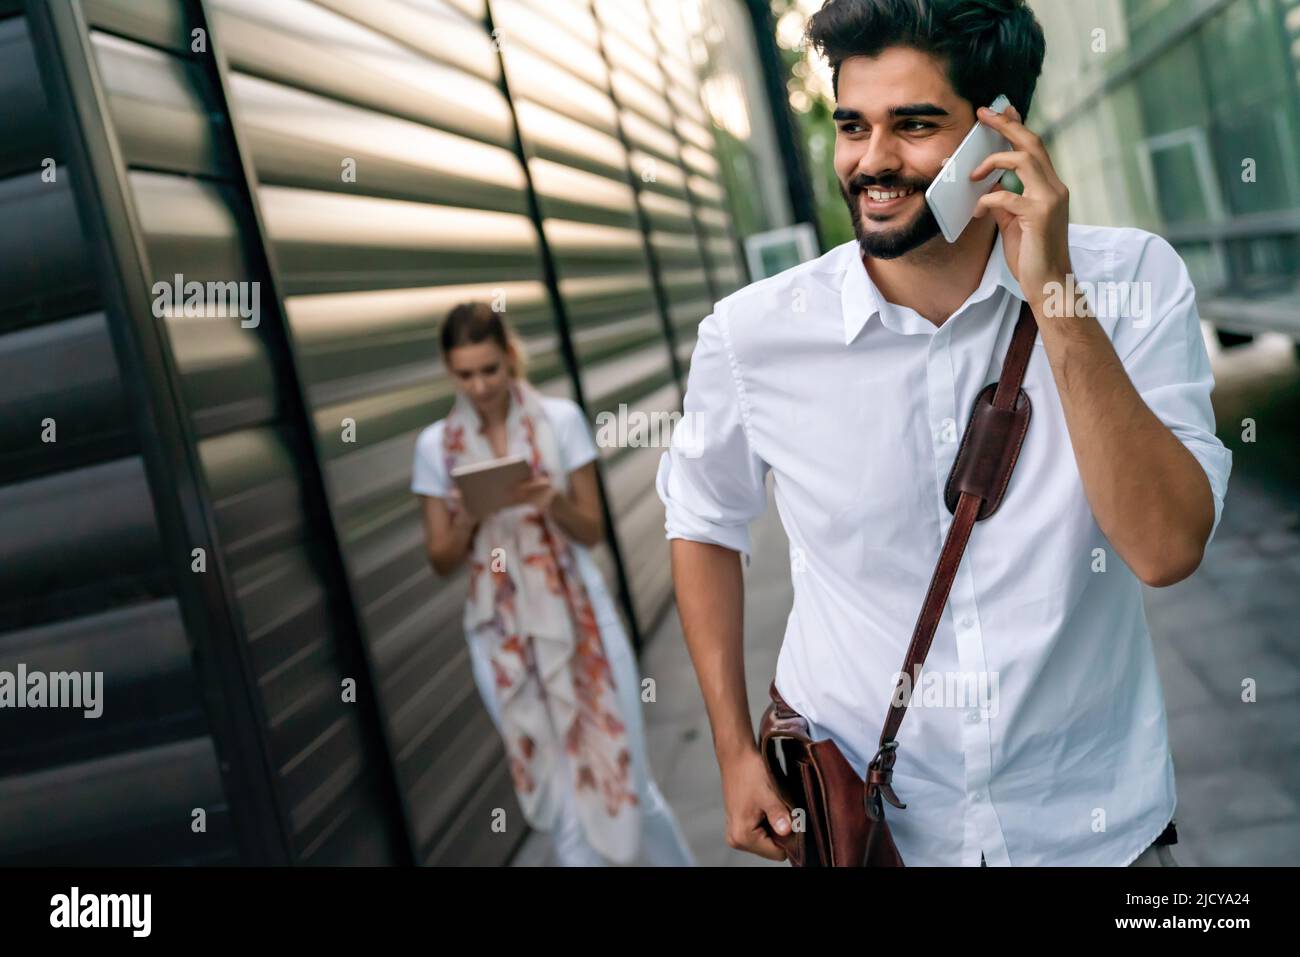 Portrait de jeunes gens d'affaires joyeux et heureux qui parlent, qui marchent à l'extérieur Banque D'Images